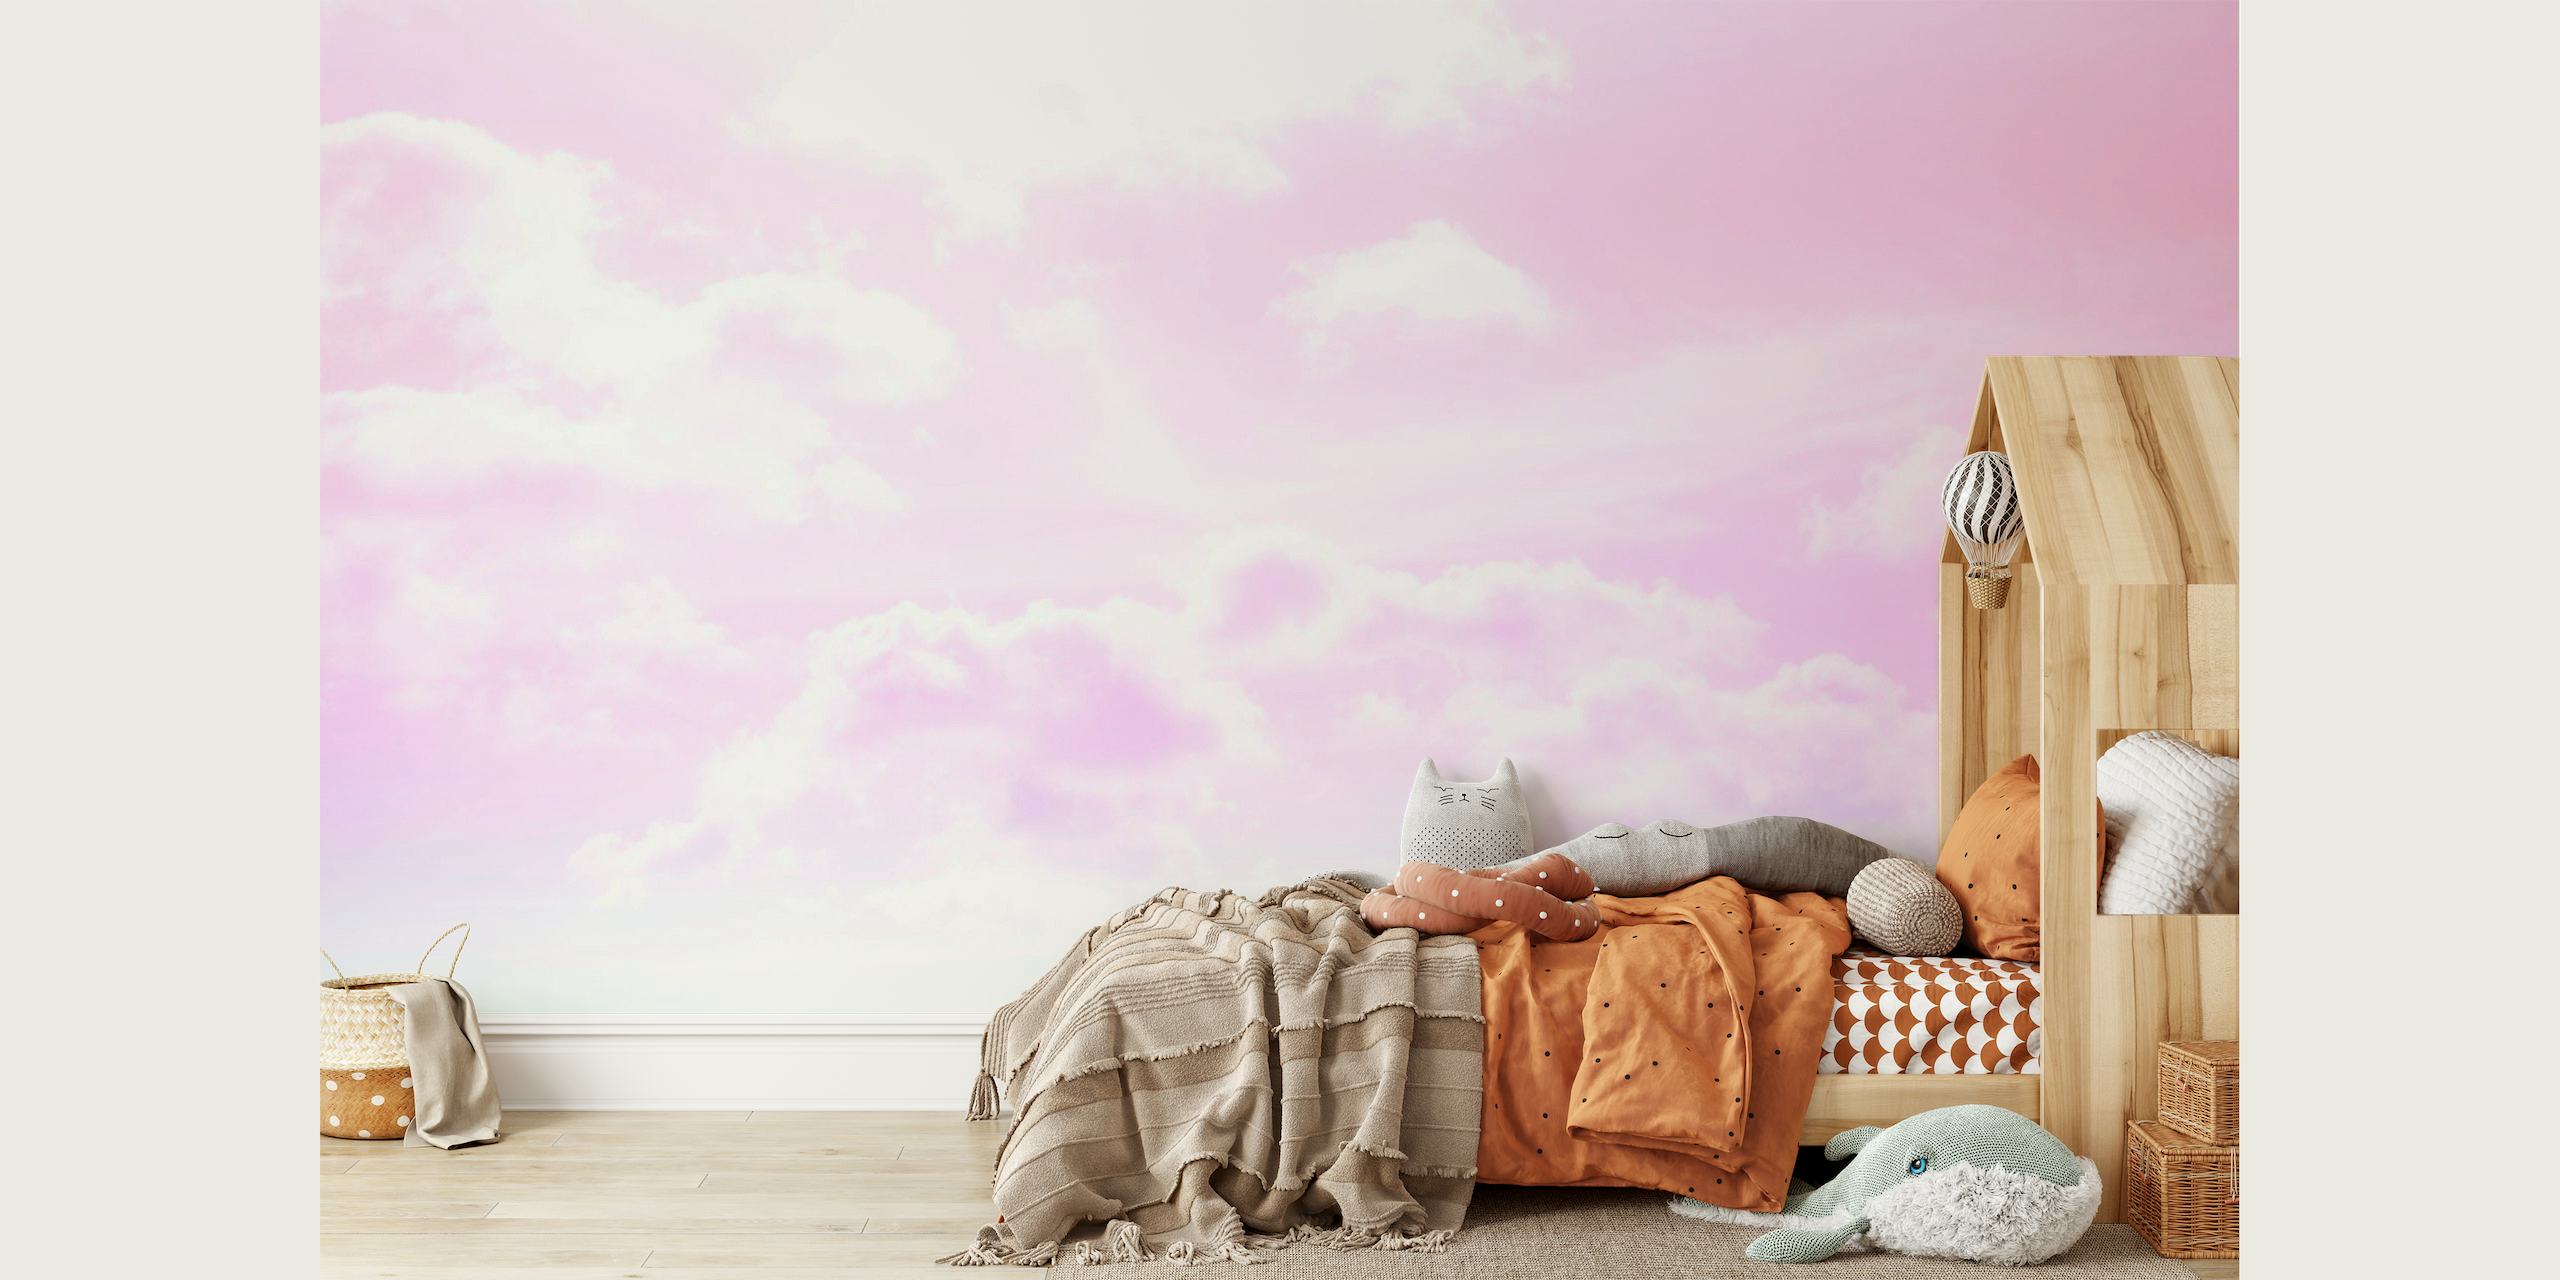 Dreamy Clouds 5 - Pastel Unicorn Colors papel de parede